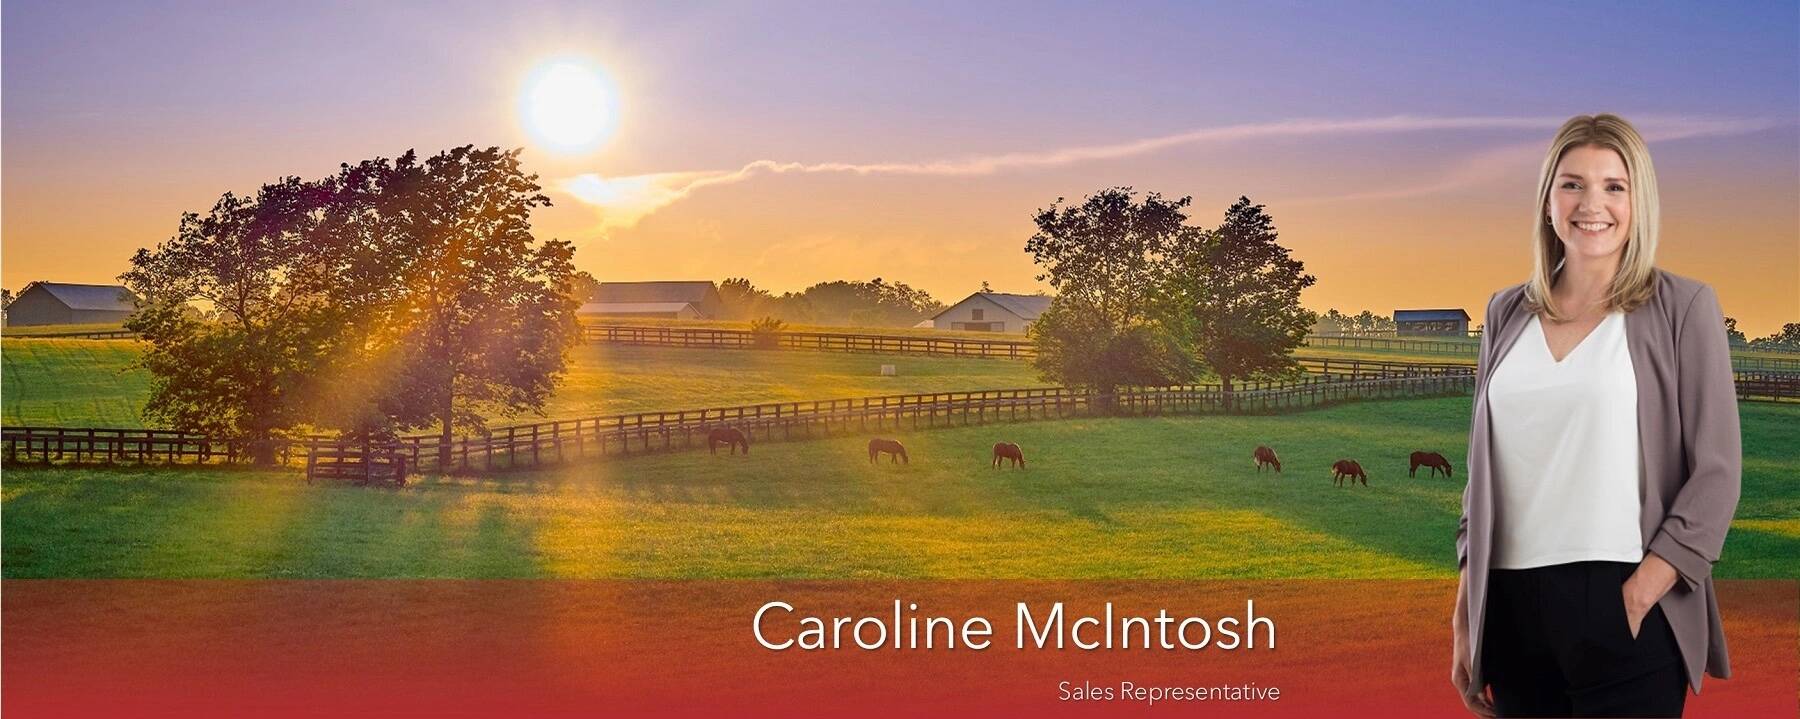 Caroline McIntosh